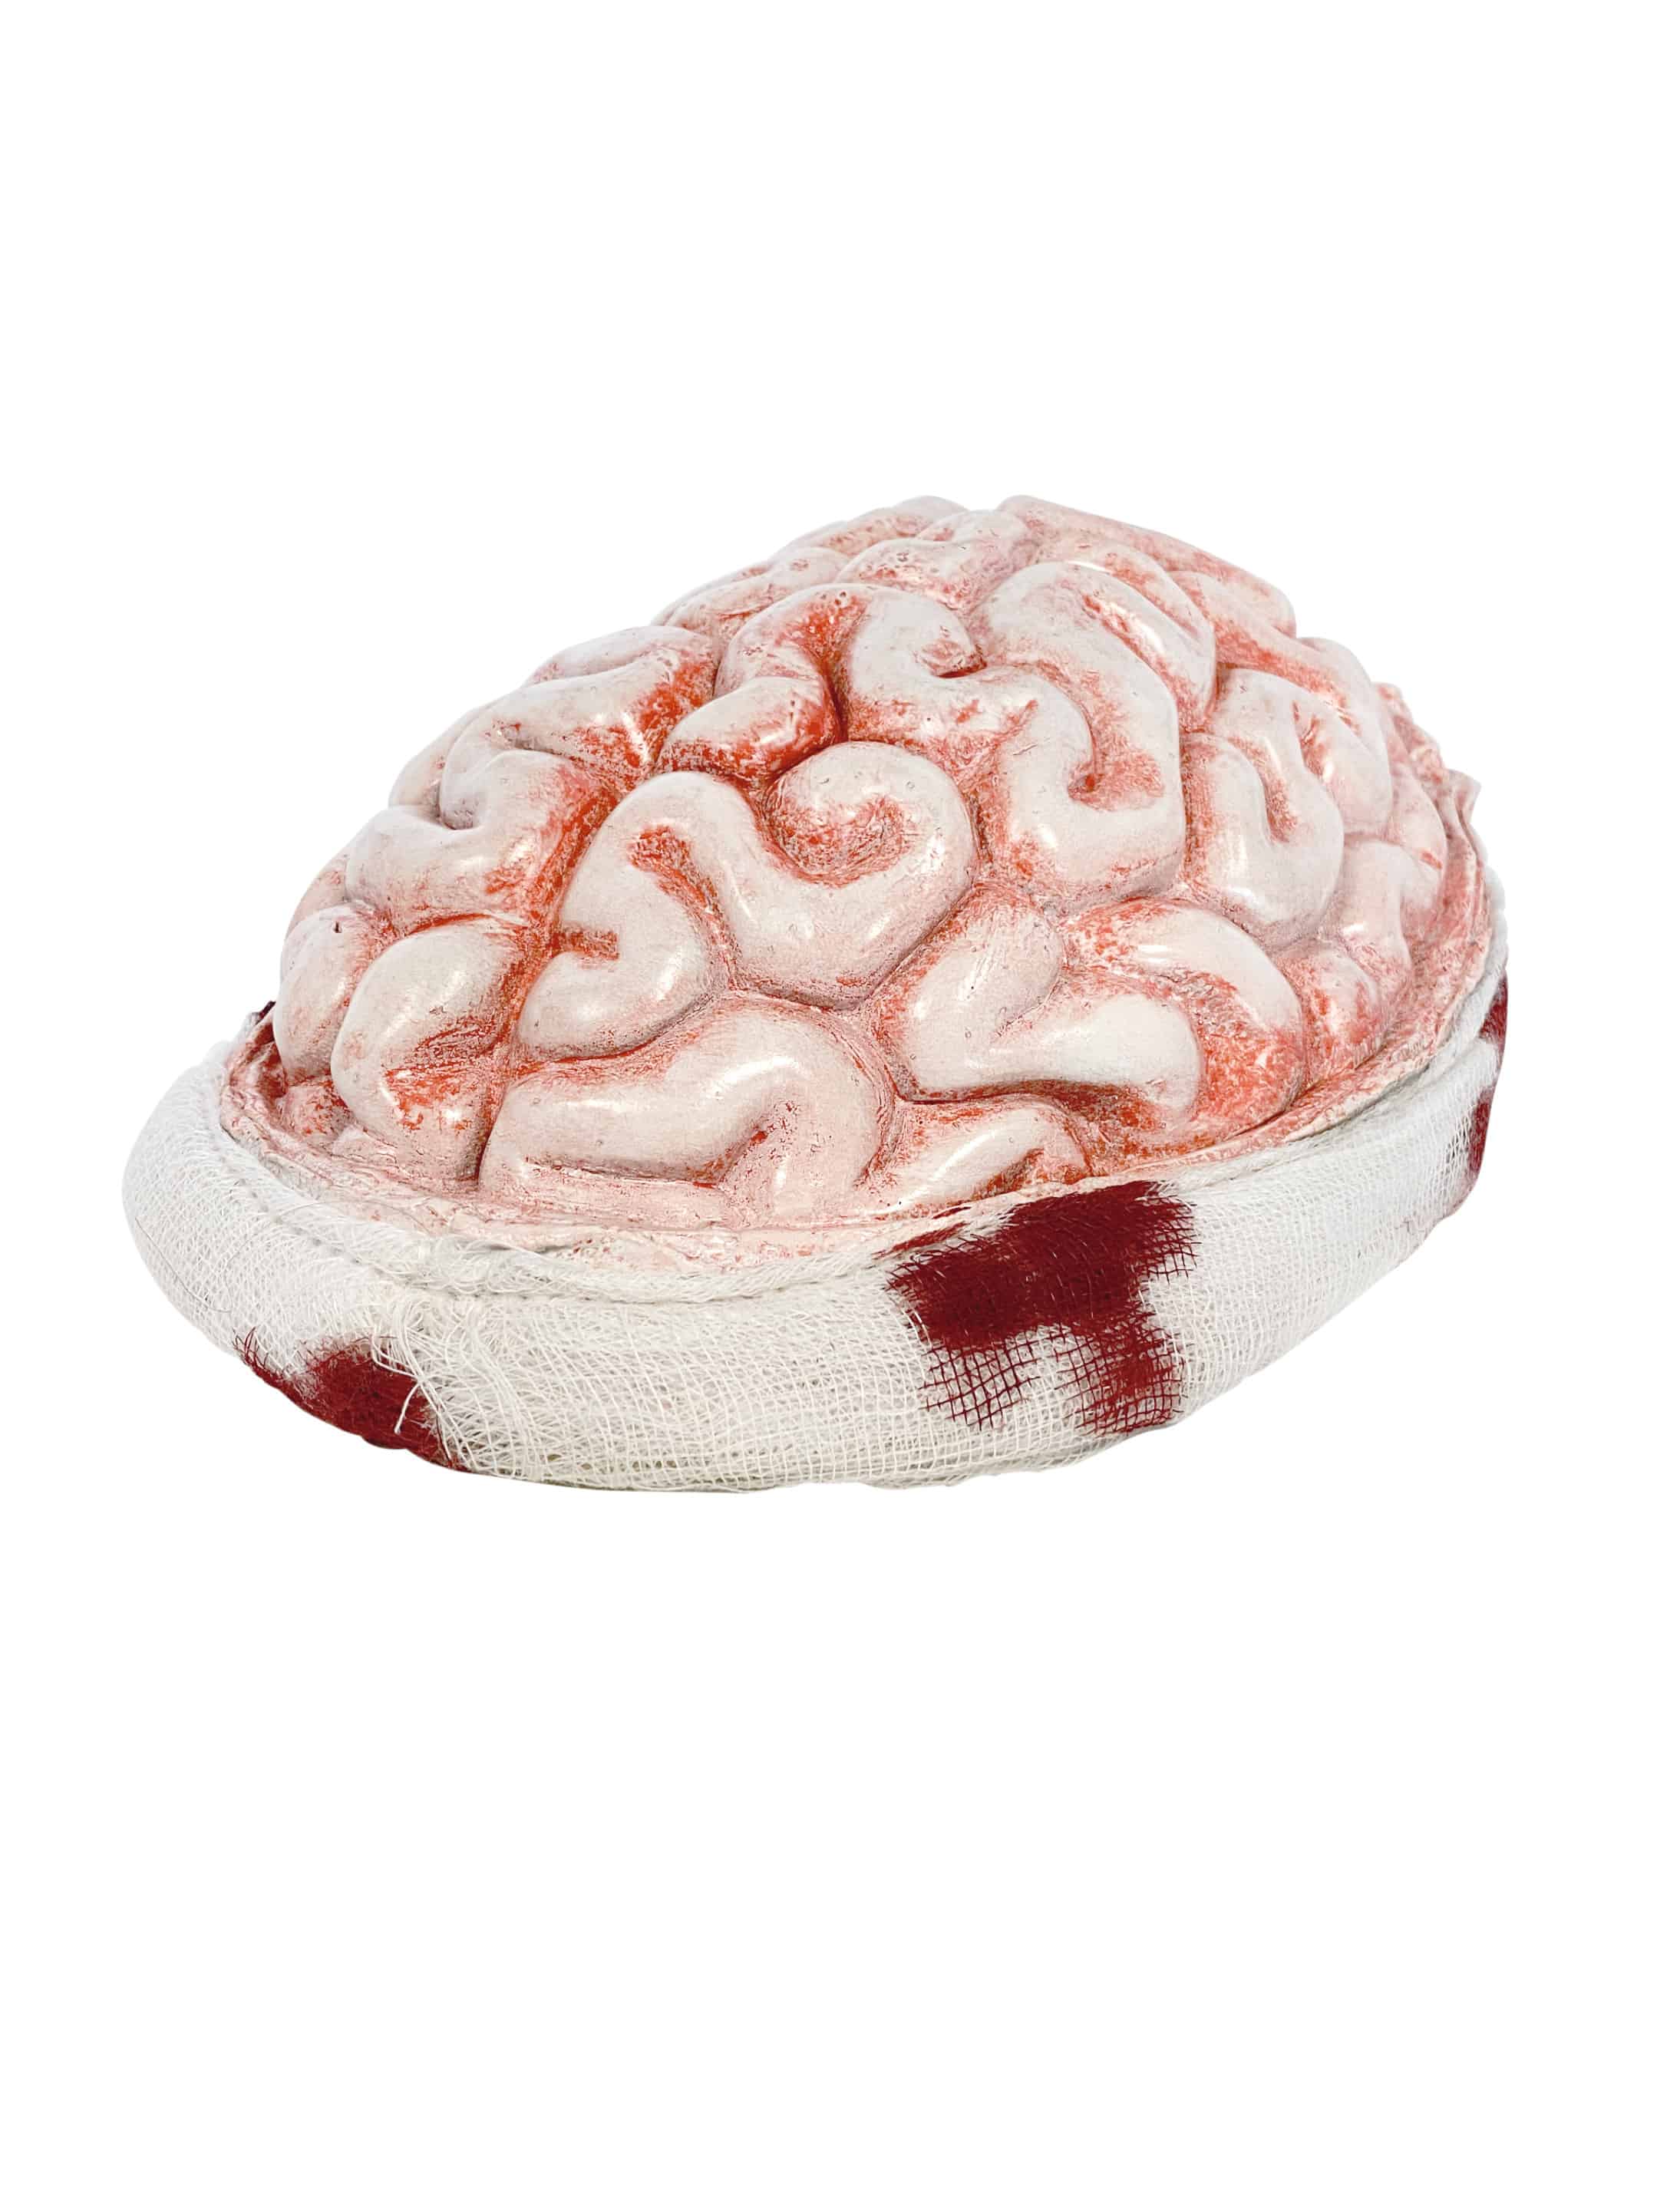 Latexkappe Gehirn mit Bandage